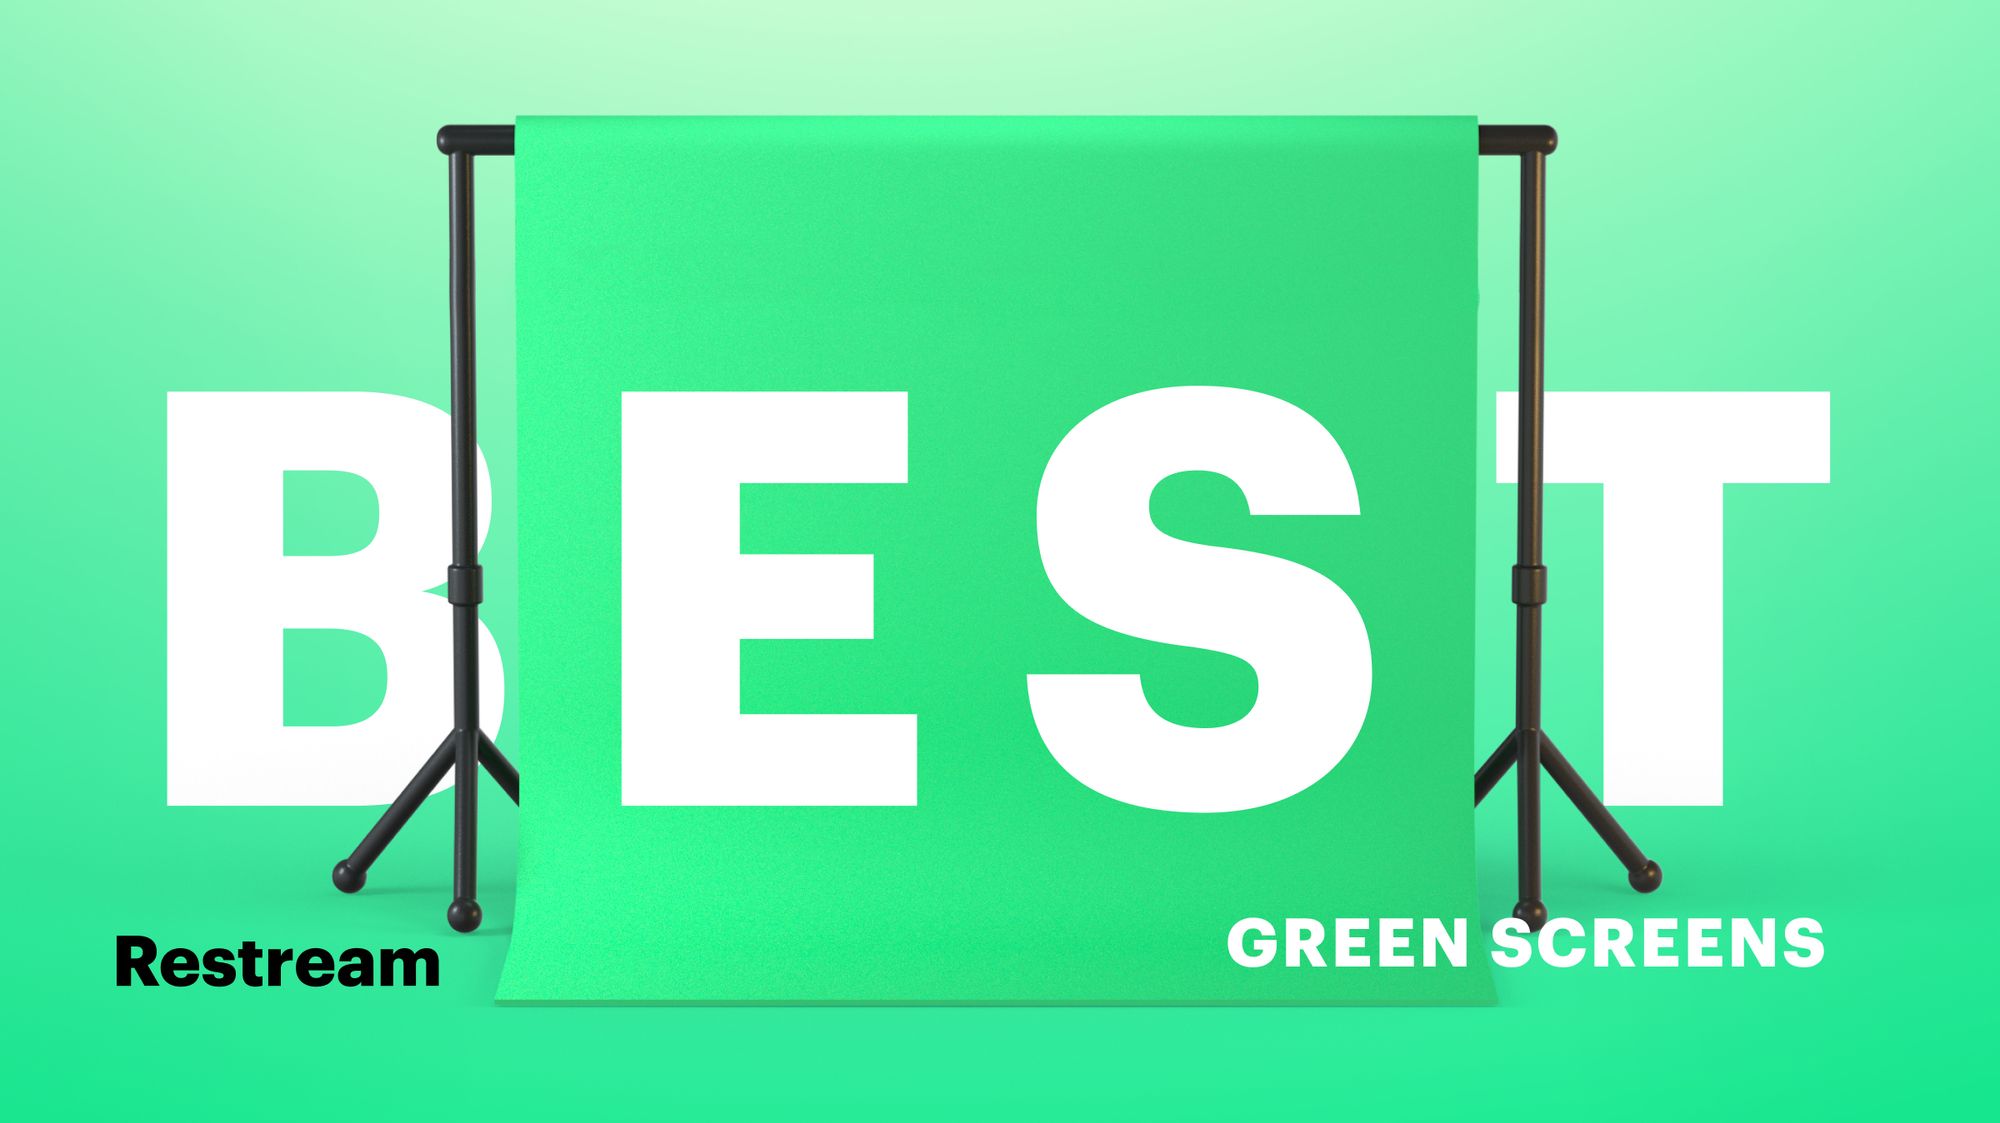 Green Screens: Từ giờ về sau, việc tạo ra những video chất lượng chuyên nghiệp không còn là điều khó khăn nhờ đến green screens. Hãy click vào ảnh liên quan để xem thêm về green screens và khám phá những tính năng tuyệt vời của nó.